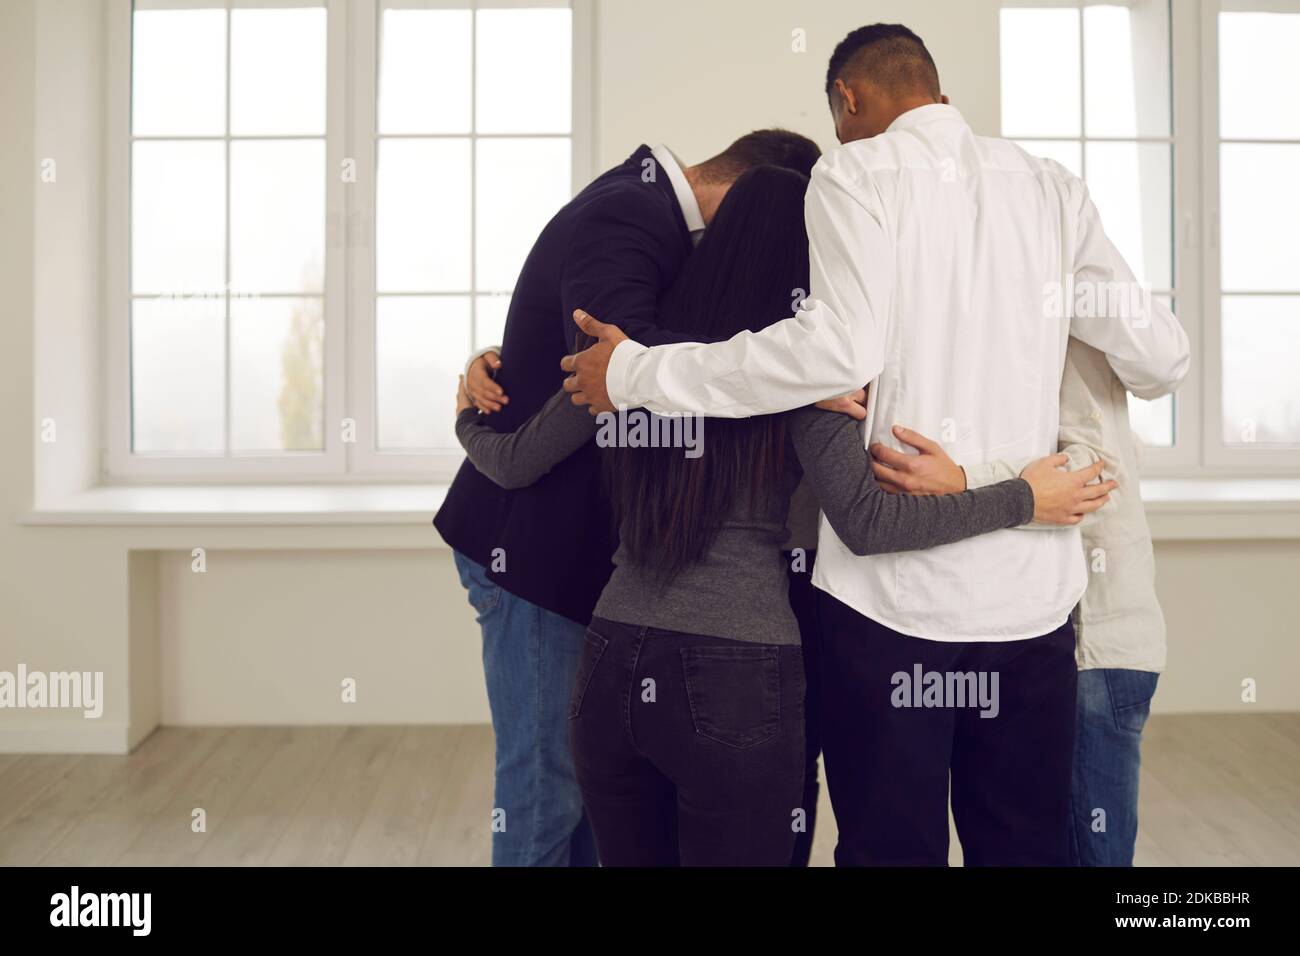 Les personnes se embrassant dans les réunions d'équipe d'entreprise ou dans la séance de thérapie de groupe Banque D'Images